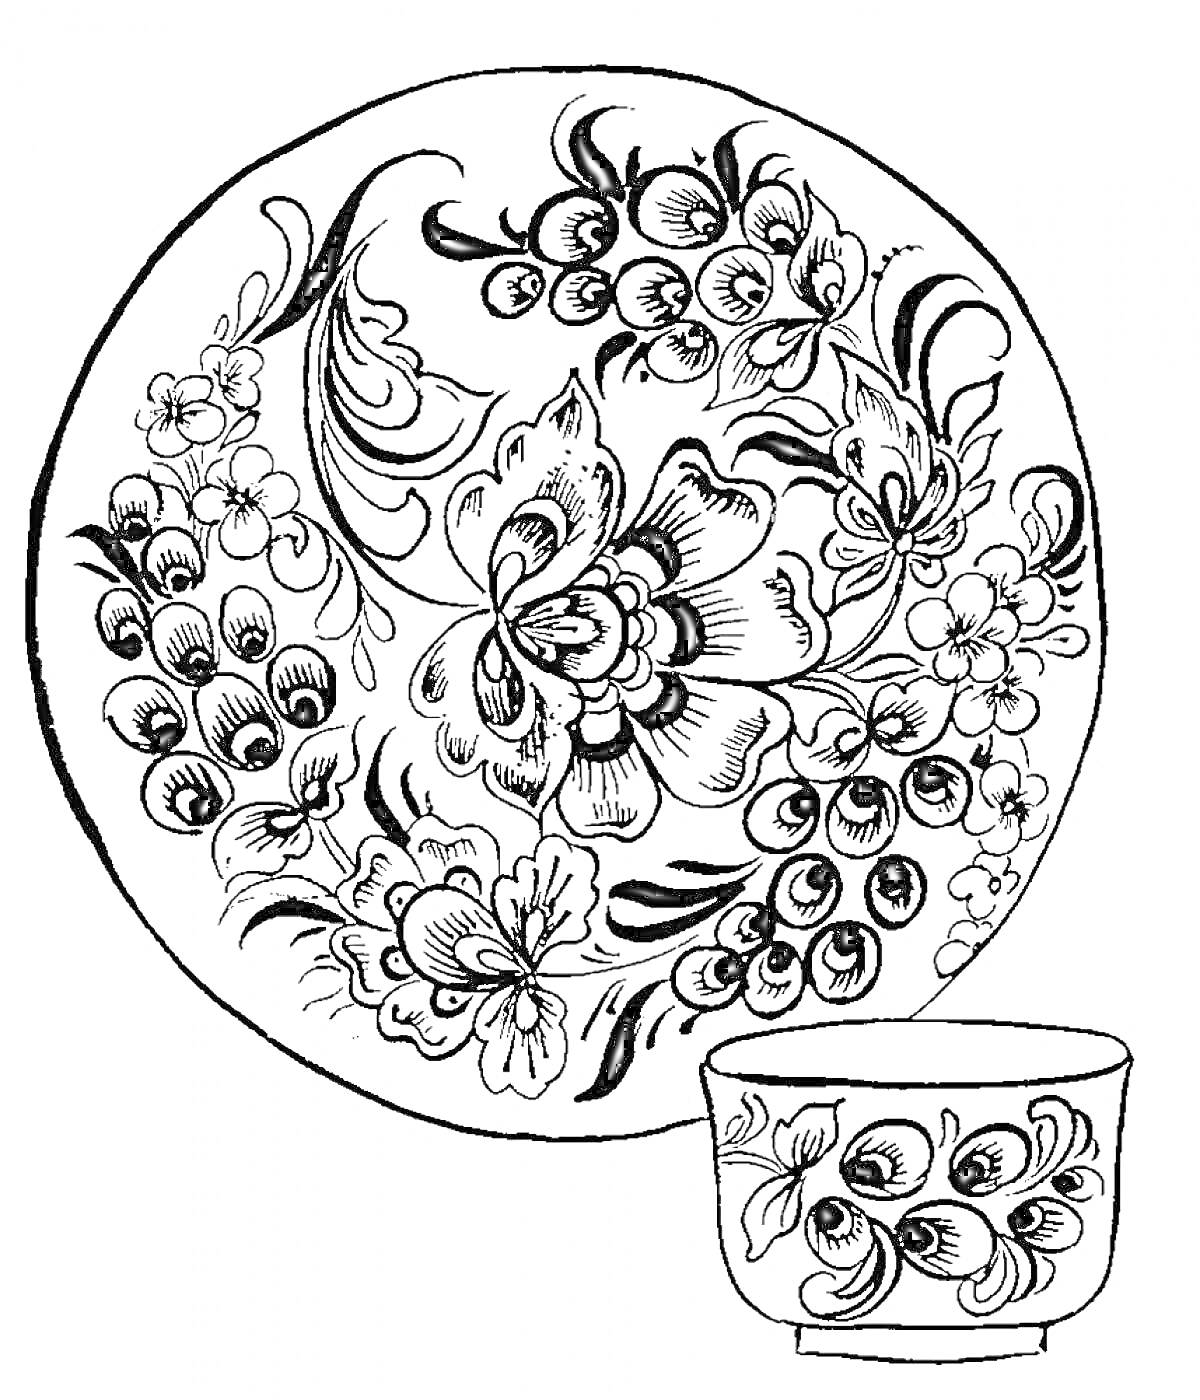 Раскраска Тарелка и чашка с узорами в стиле хохломы, изображены цветы, ягоды и листва